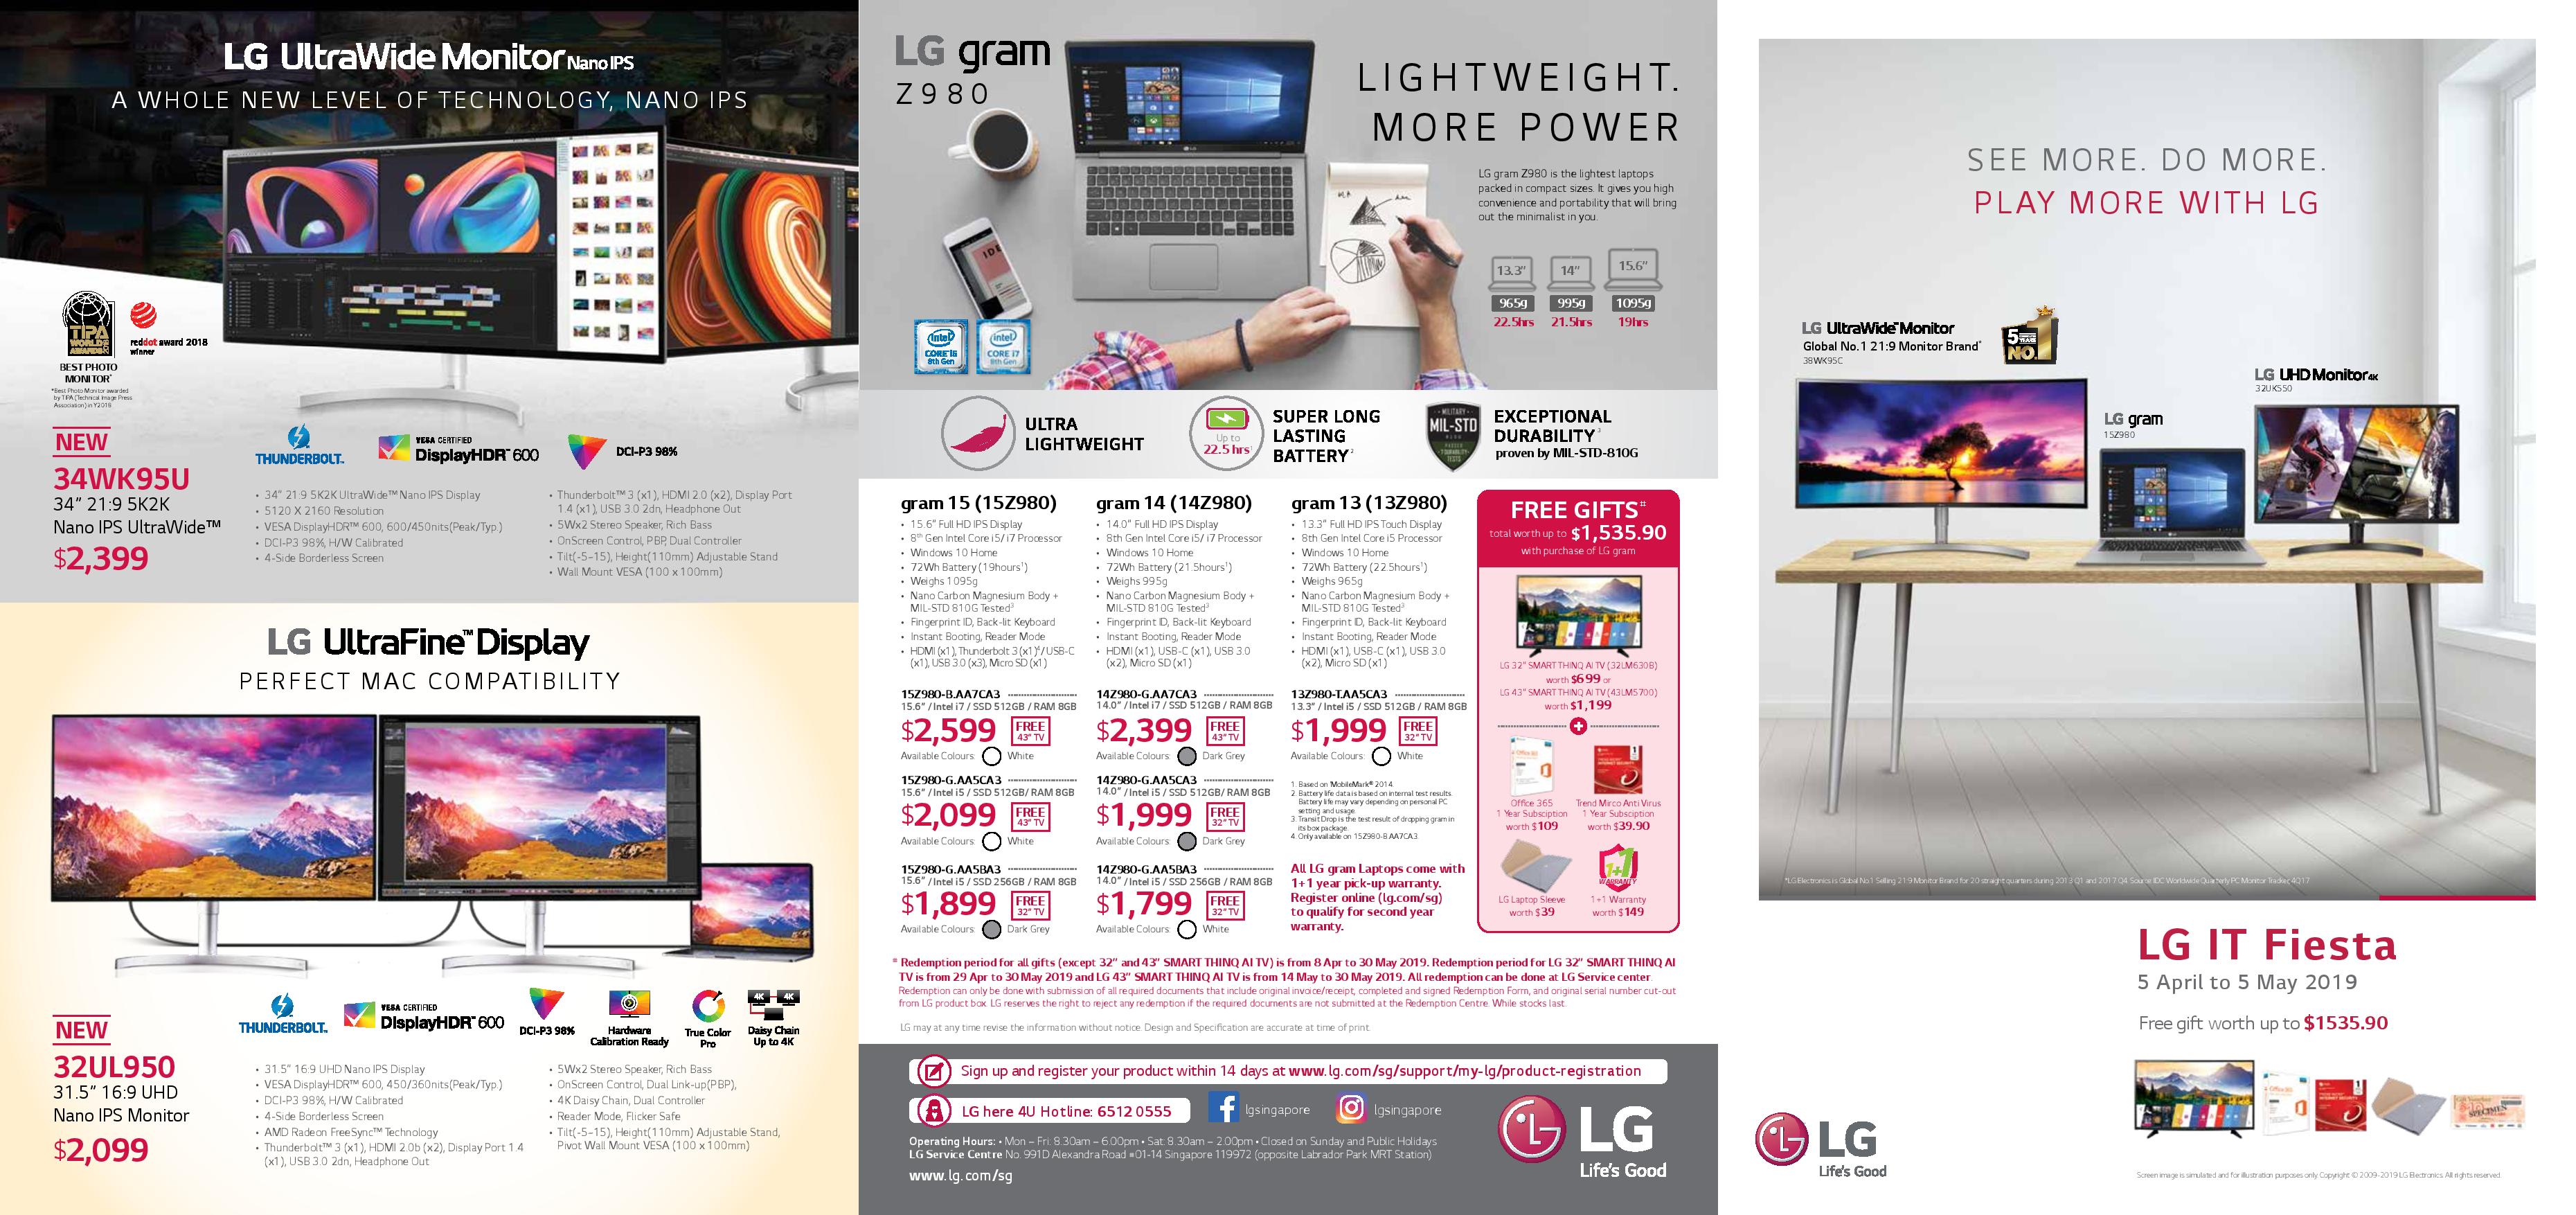 LG IT Fiesta 2019 (Till 5th May)